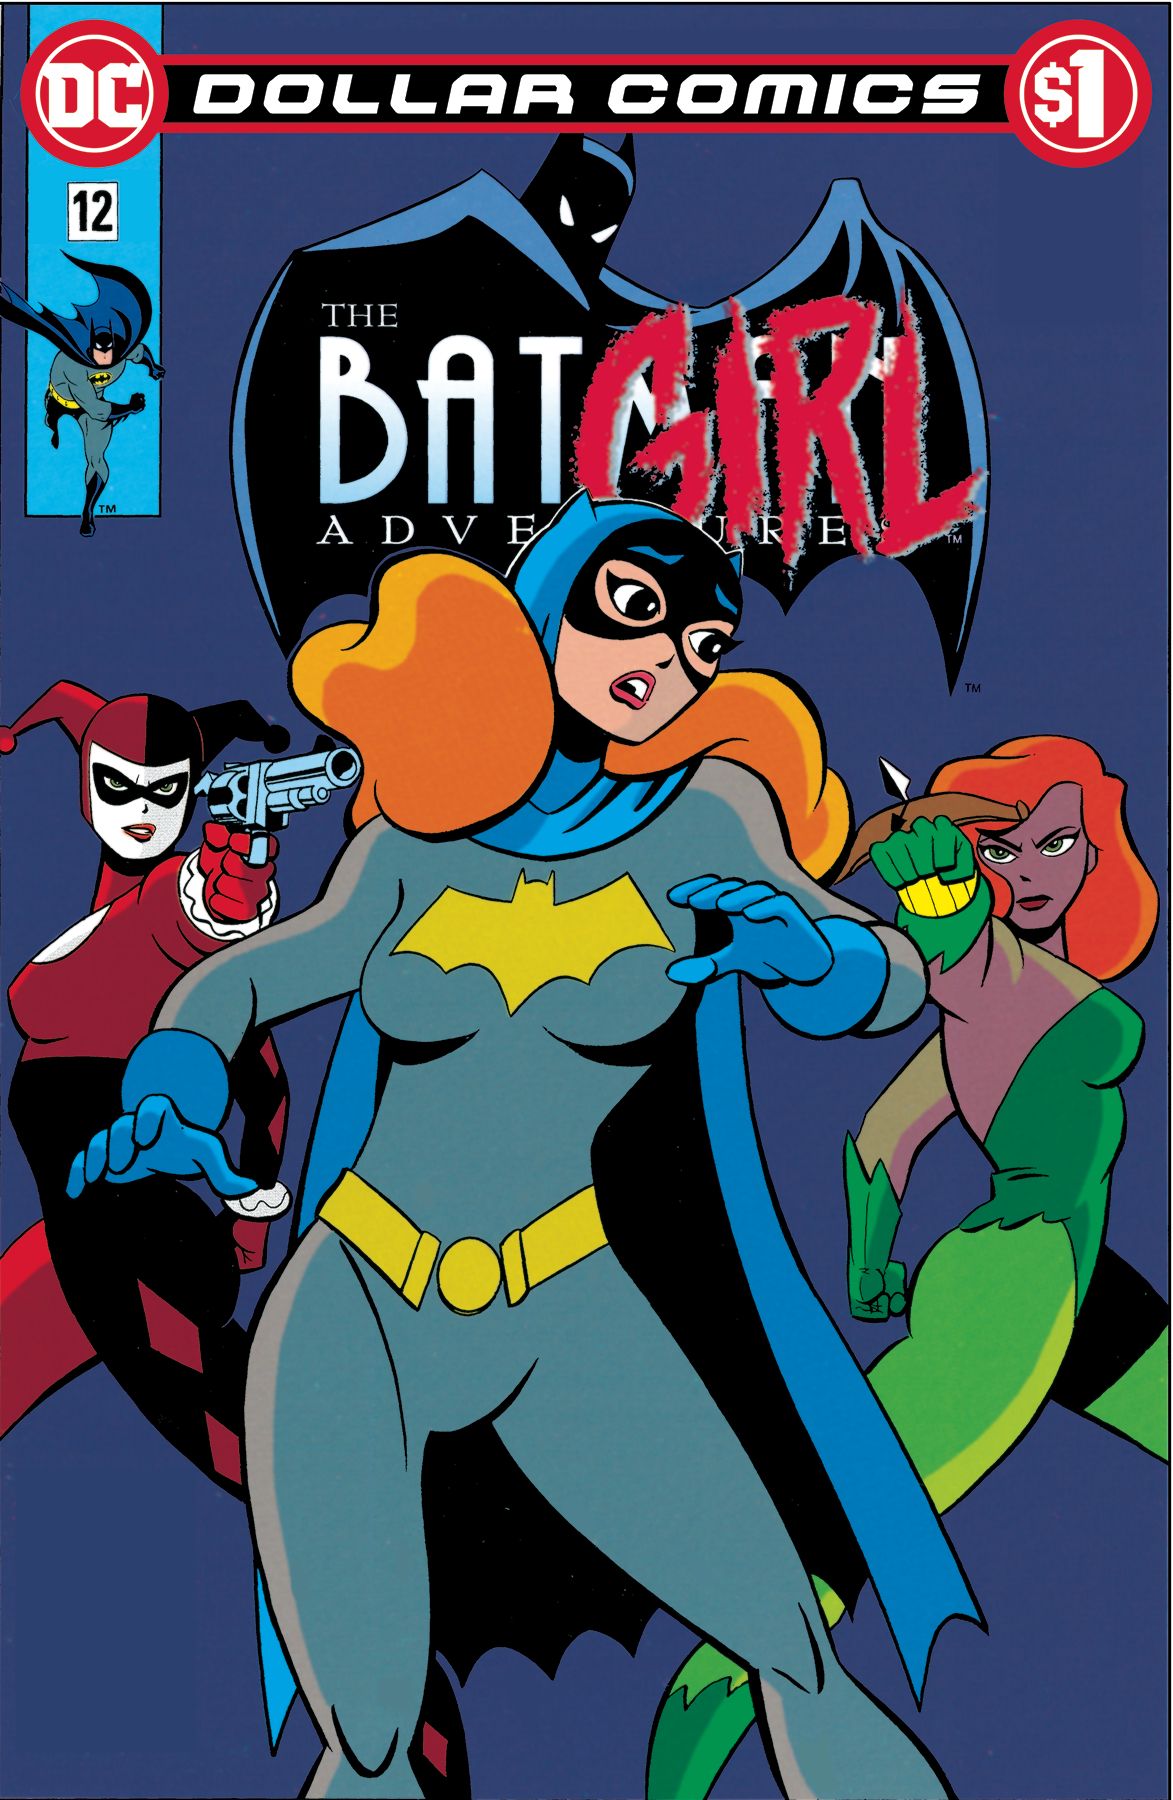 Dollar Comics: Batman Adventures #12 Comic